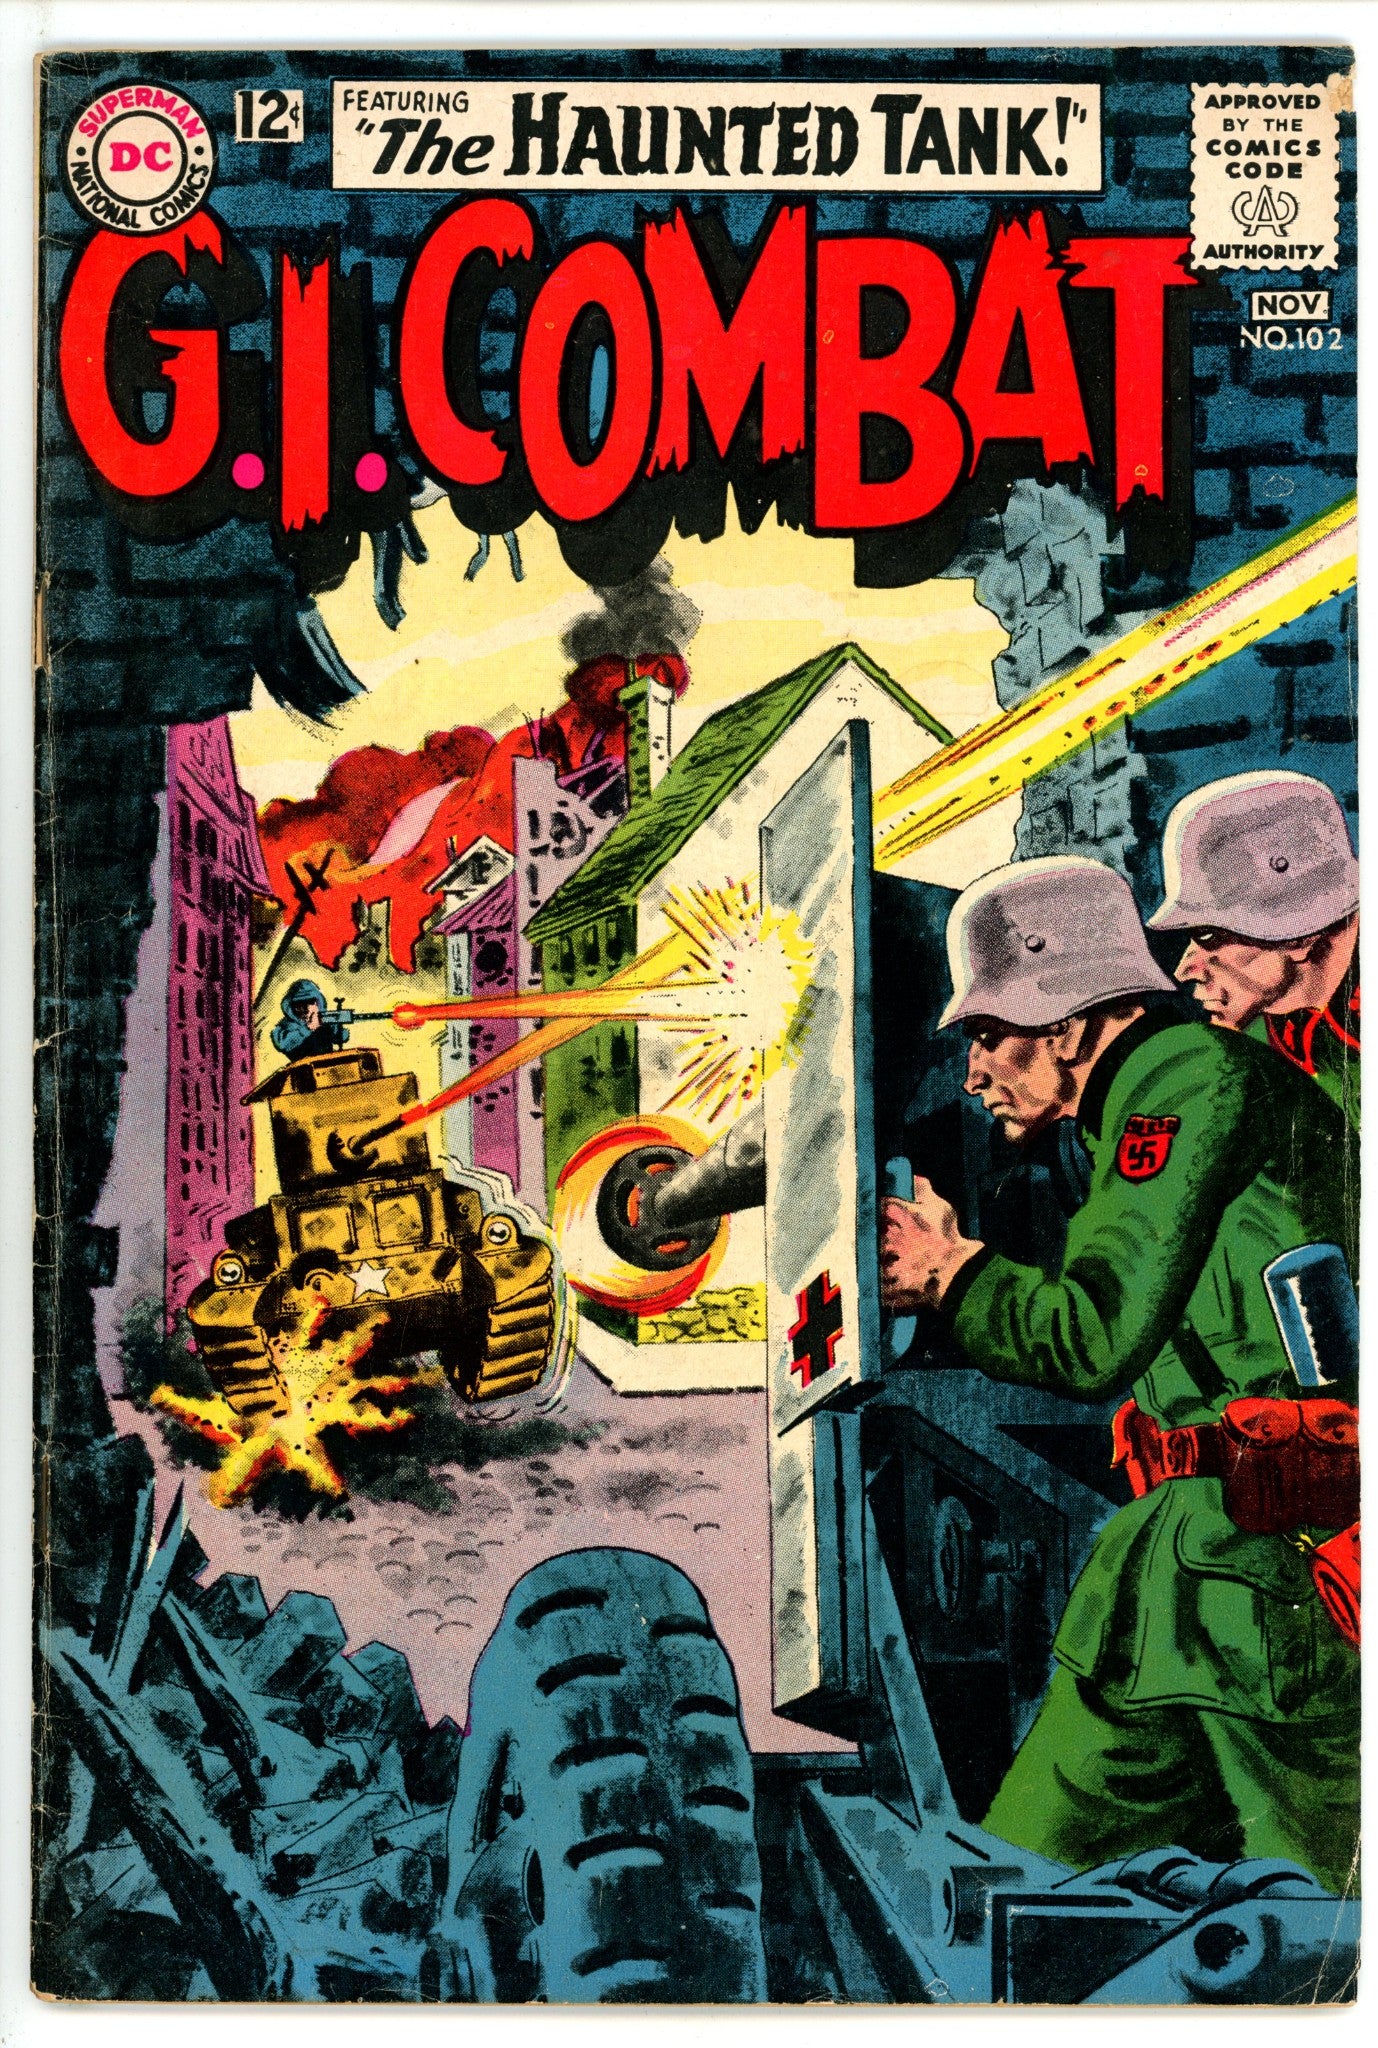 G.I. Combat Vol 1 102 VG+ (4.5) (1963) 